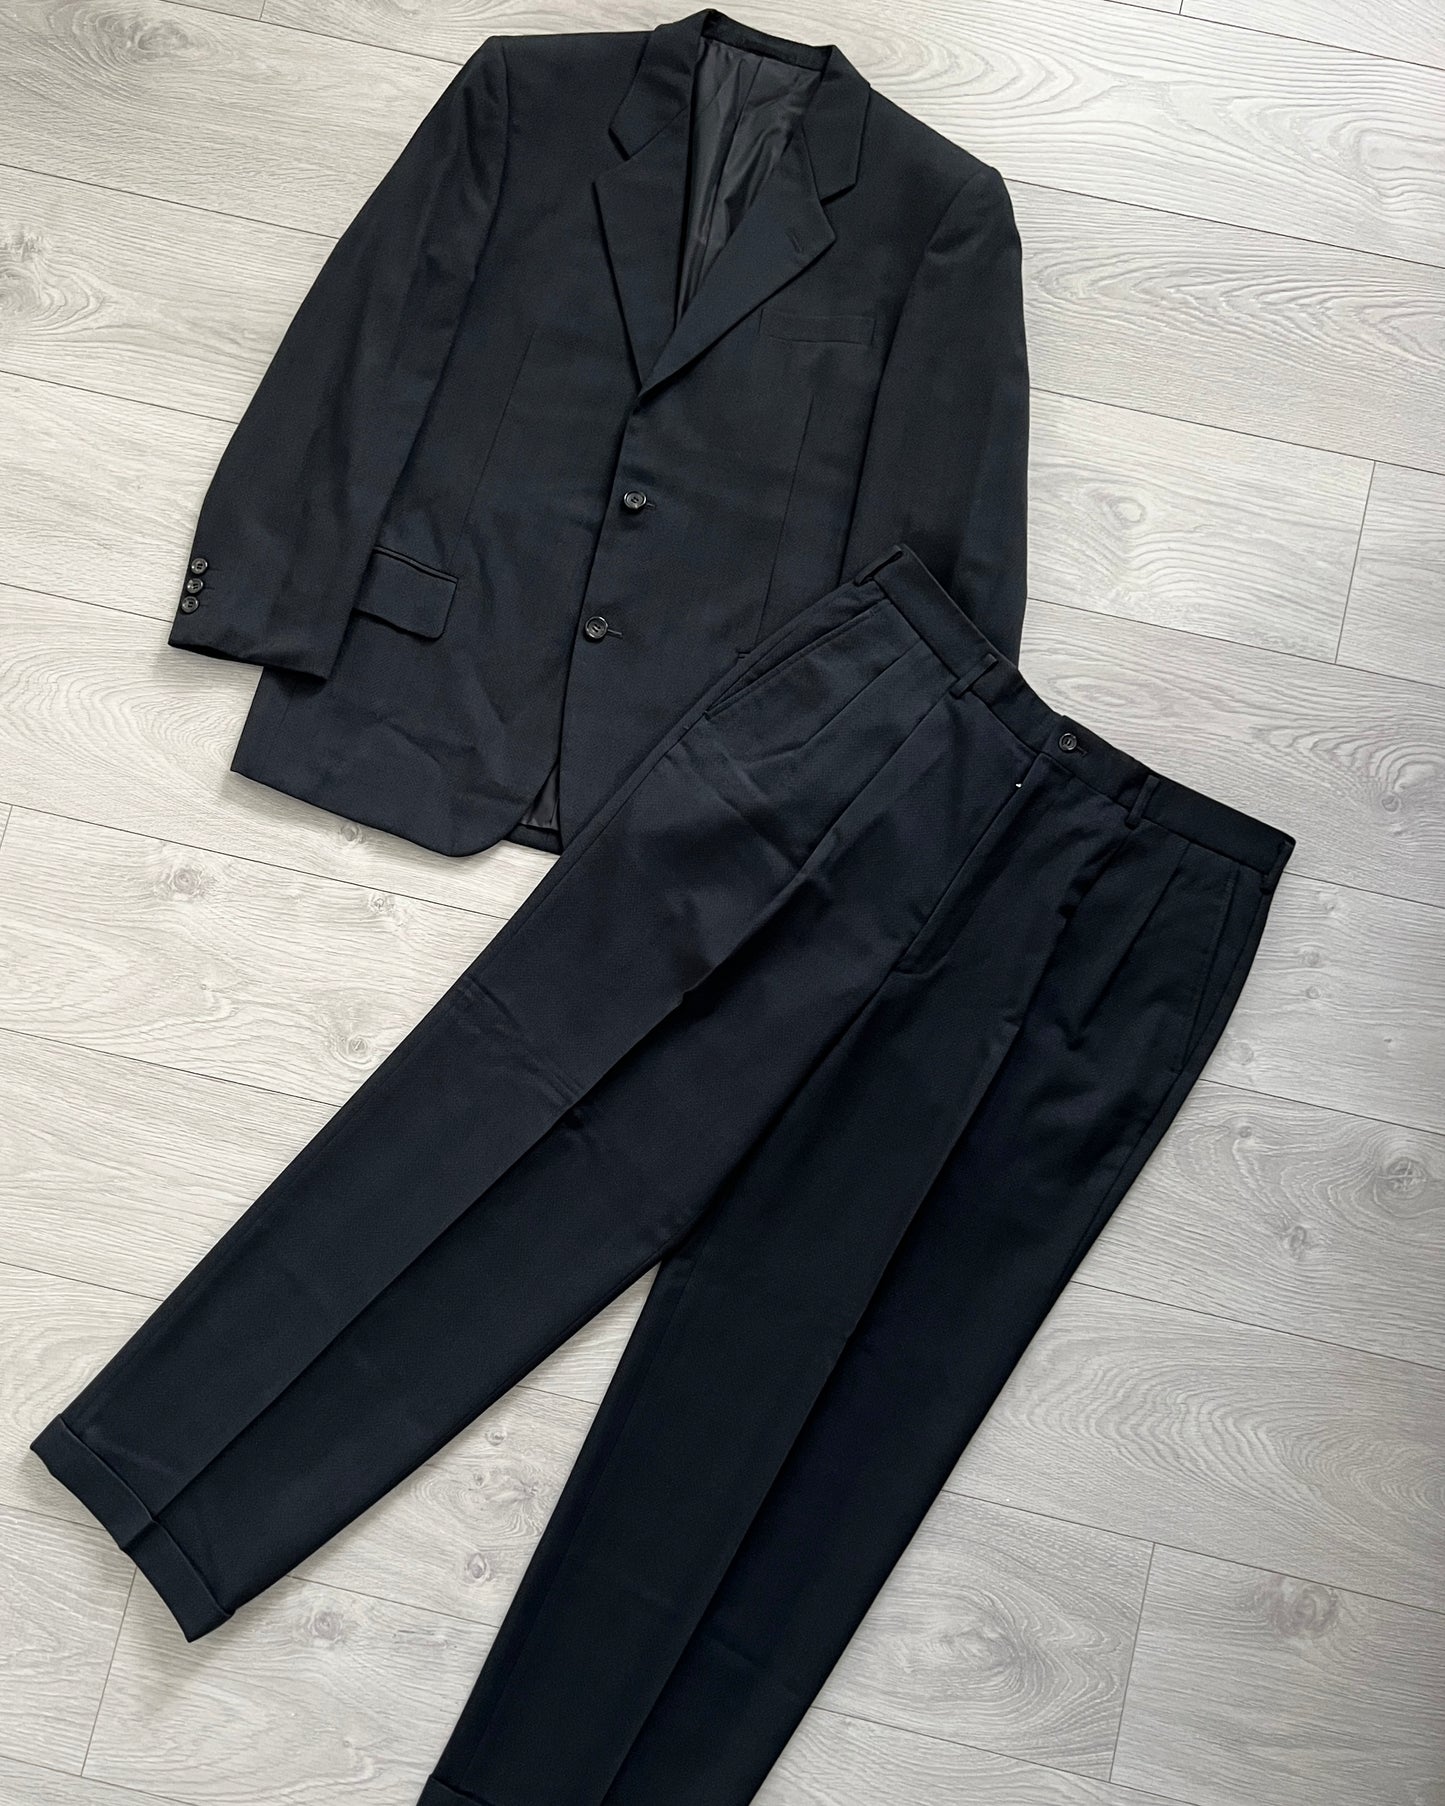 Comme Des Garcons Homme Deux AW1999 Textured Pleated Suit - Size L Jacket / 34 Waist